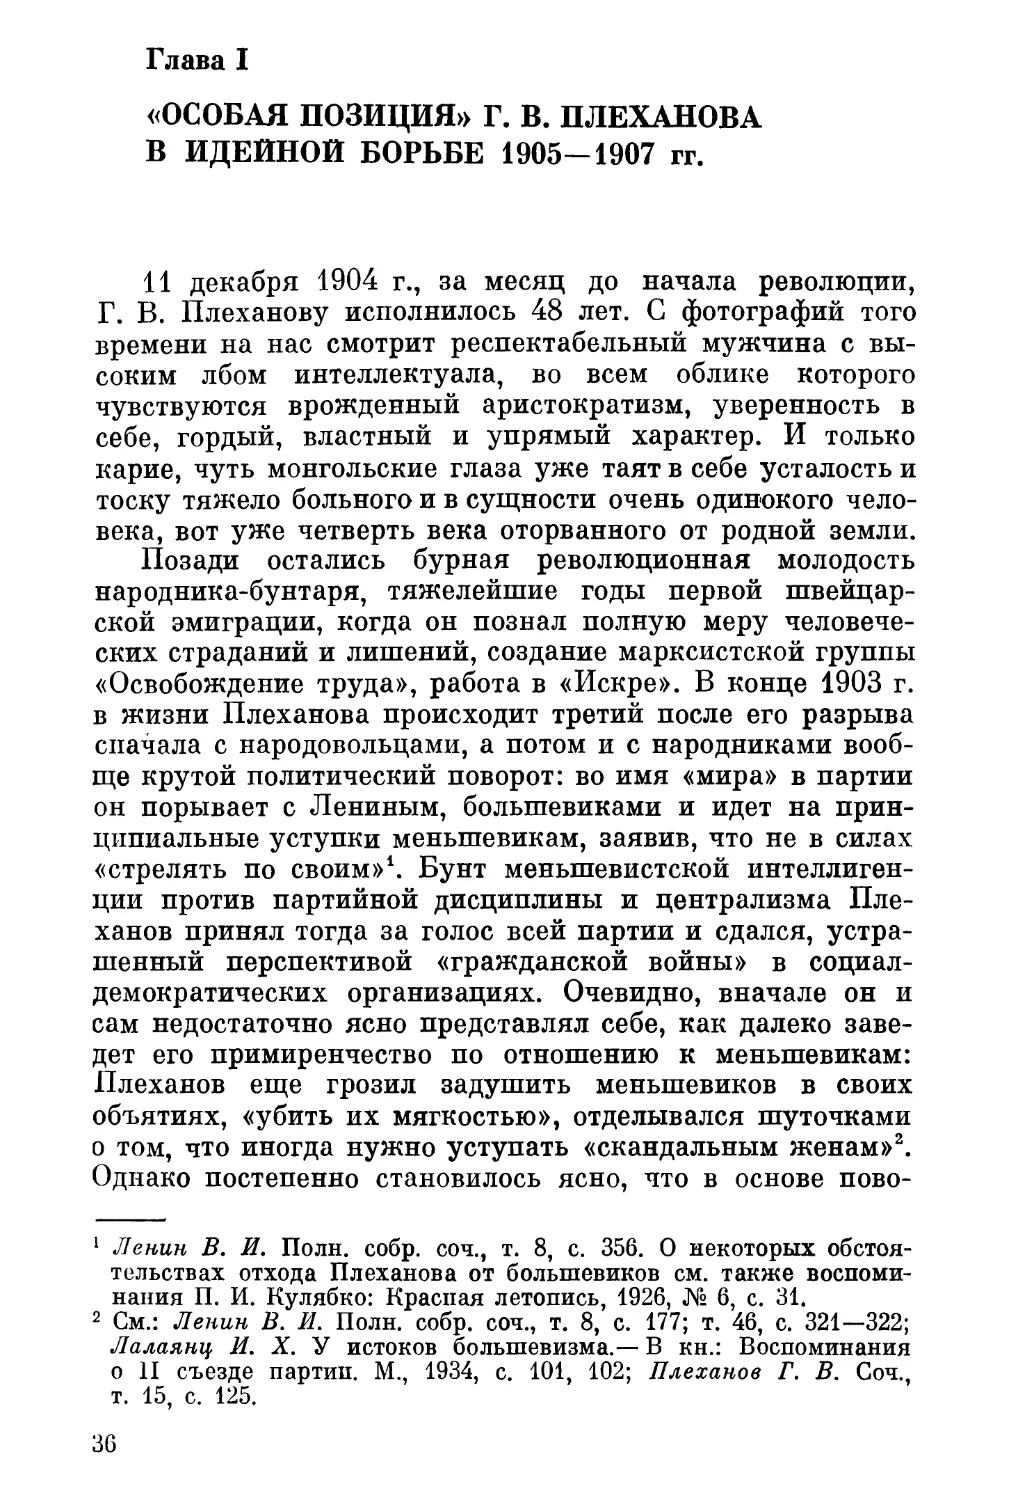 Глава I. «Особая позиция» Плеханова в идейной борьбе 1905—1907 гг.